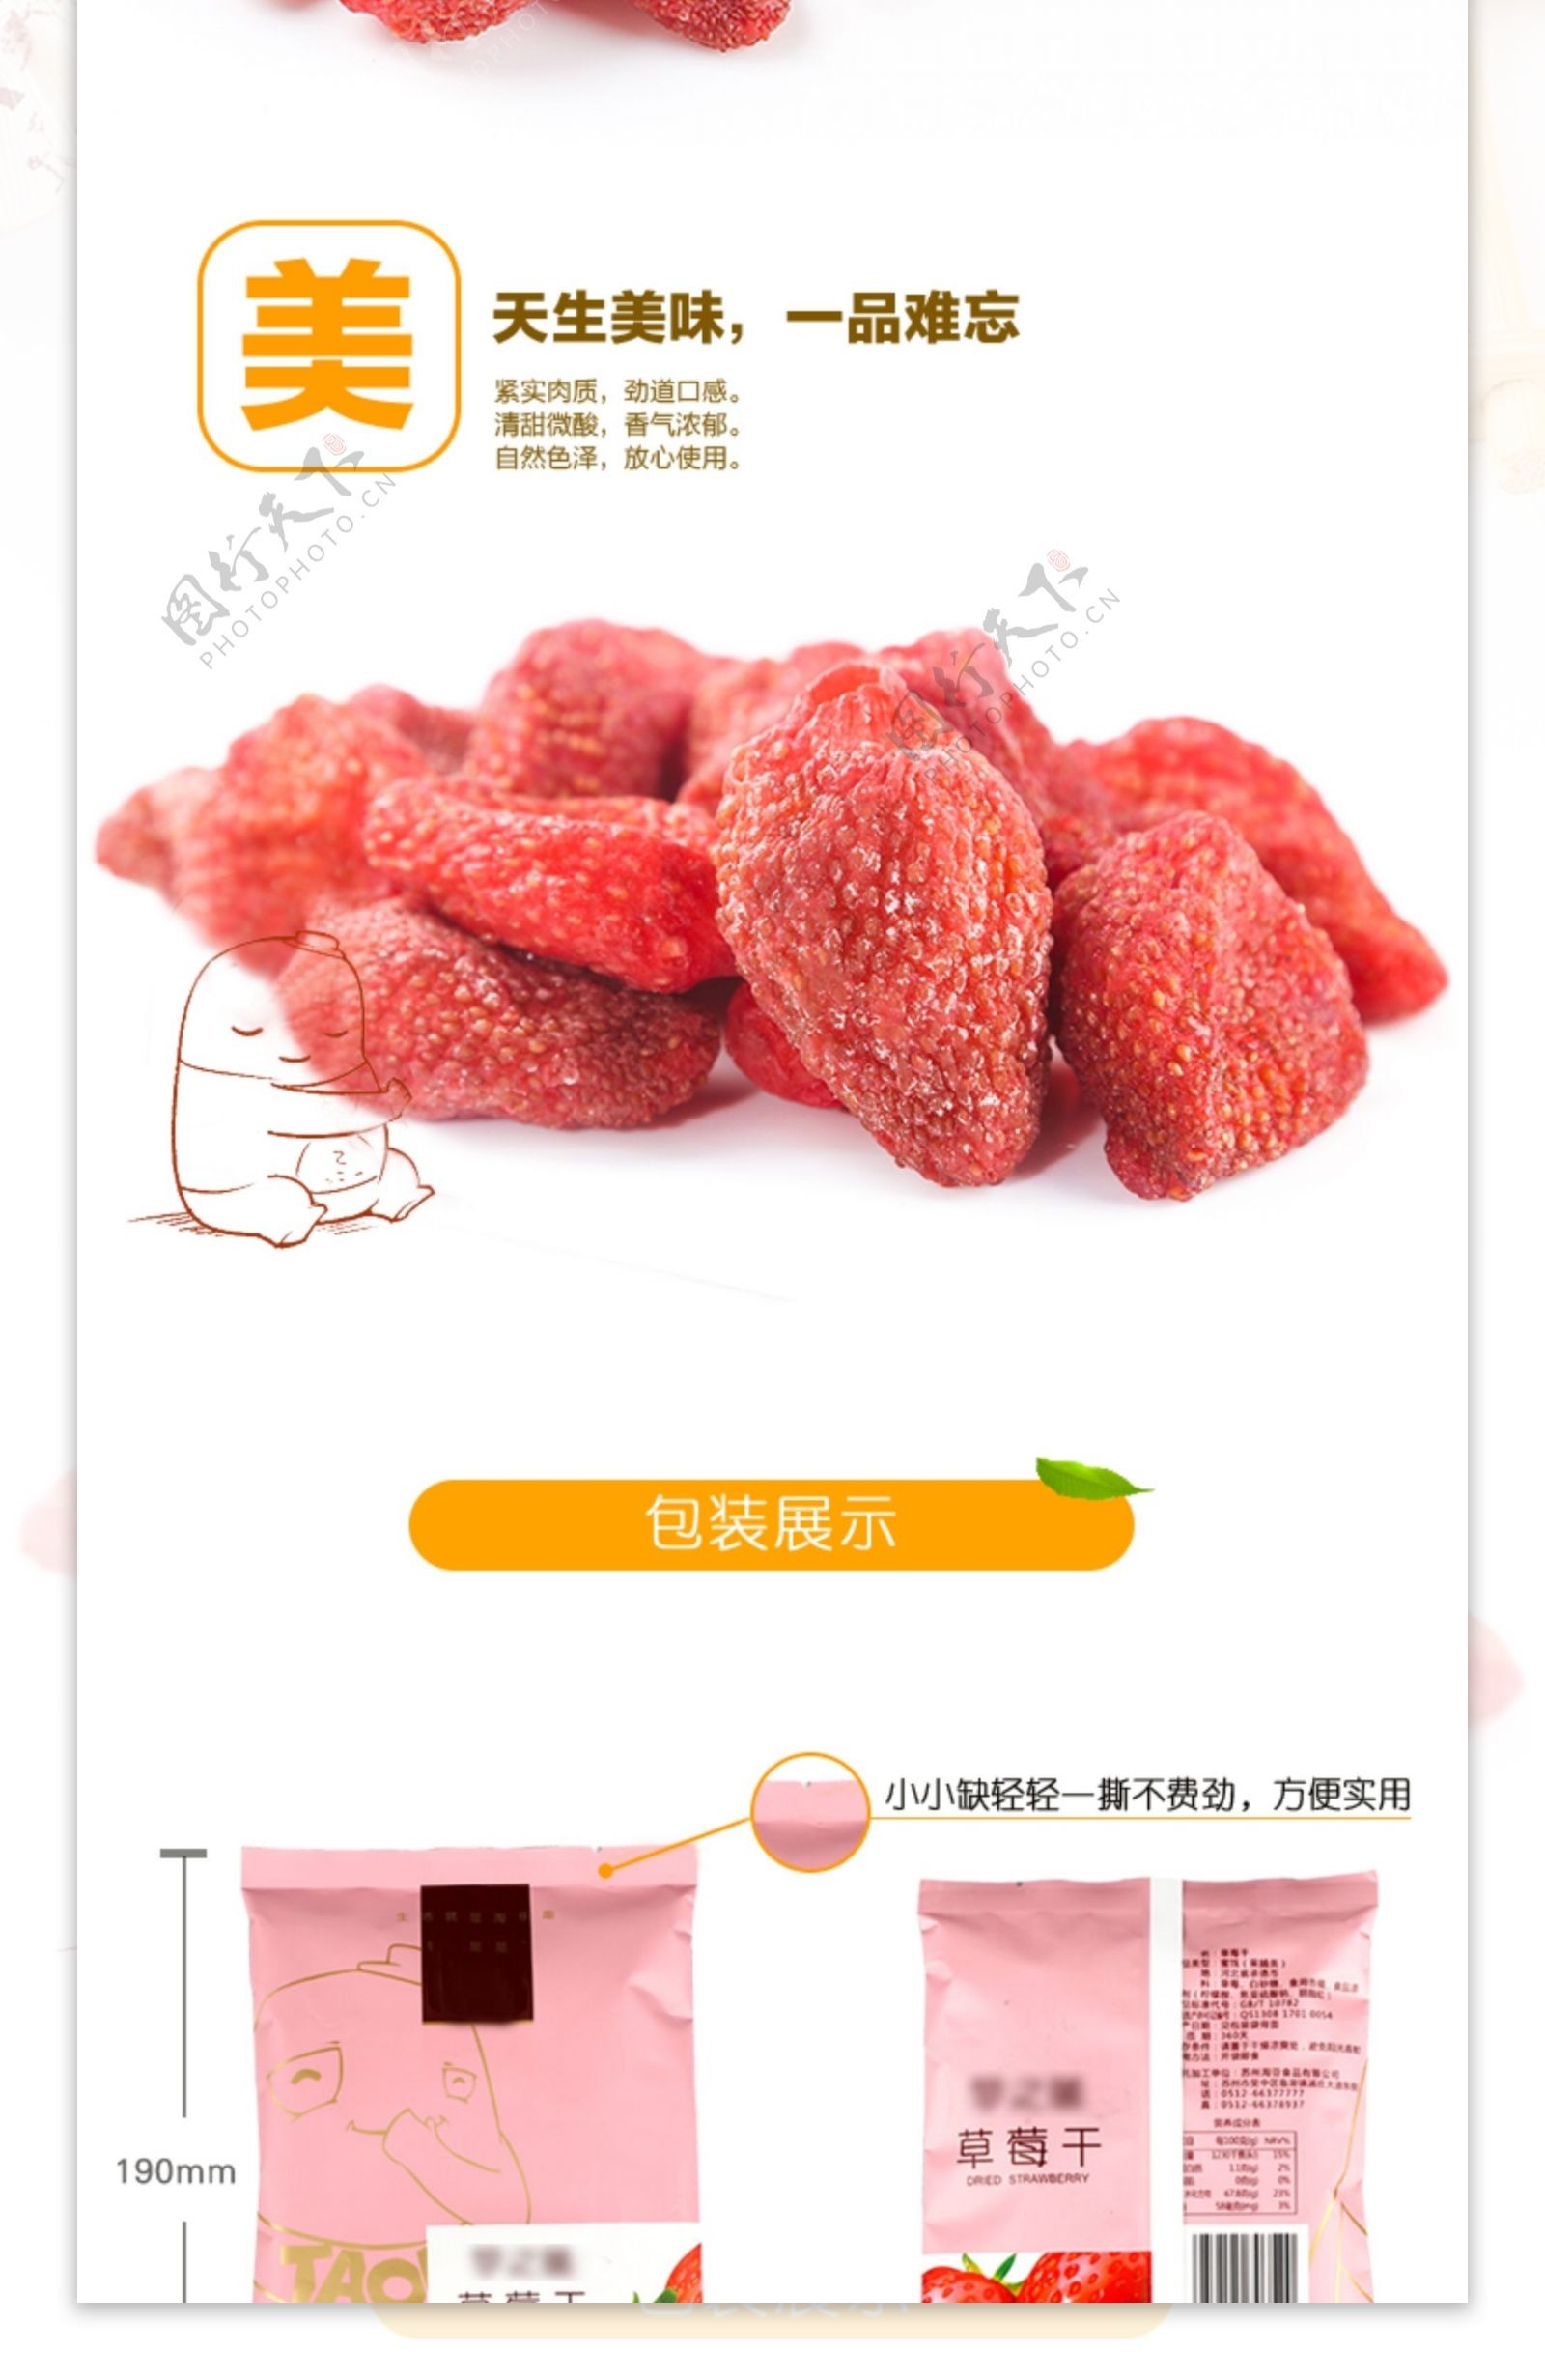 新鲜美味草莓干淘宝详情页